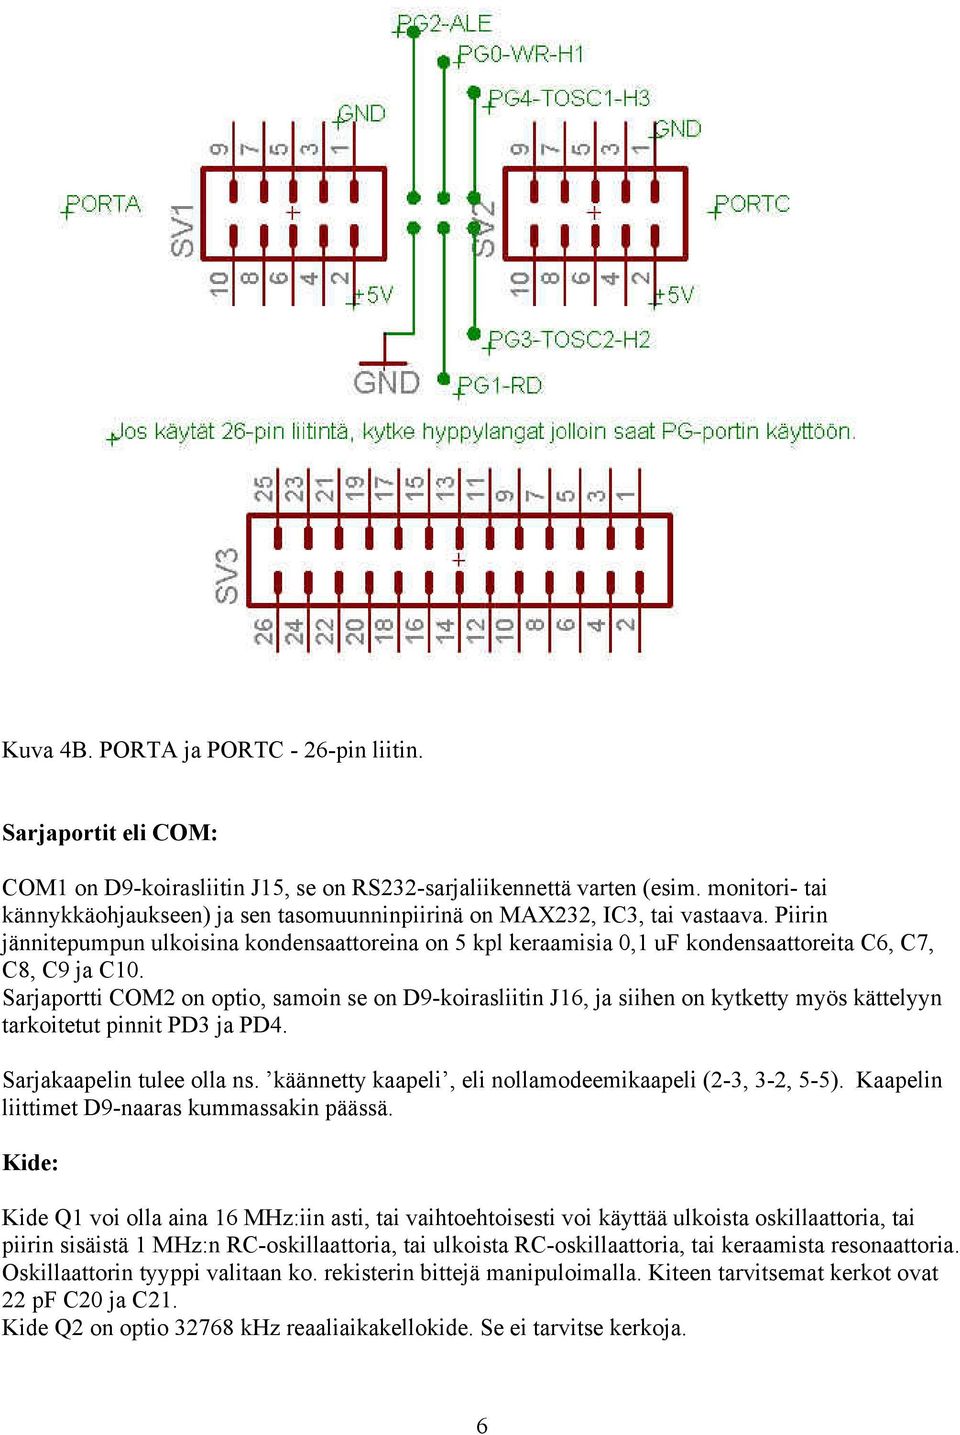 Piirin jännitepumpun ulkoisina kondensaattoreina on 5 kpl keraamisia 0,1 uf kondensaattoreita C6, C7, C8, C9 ja C10.